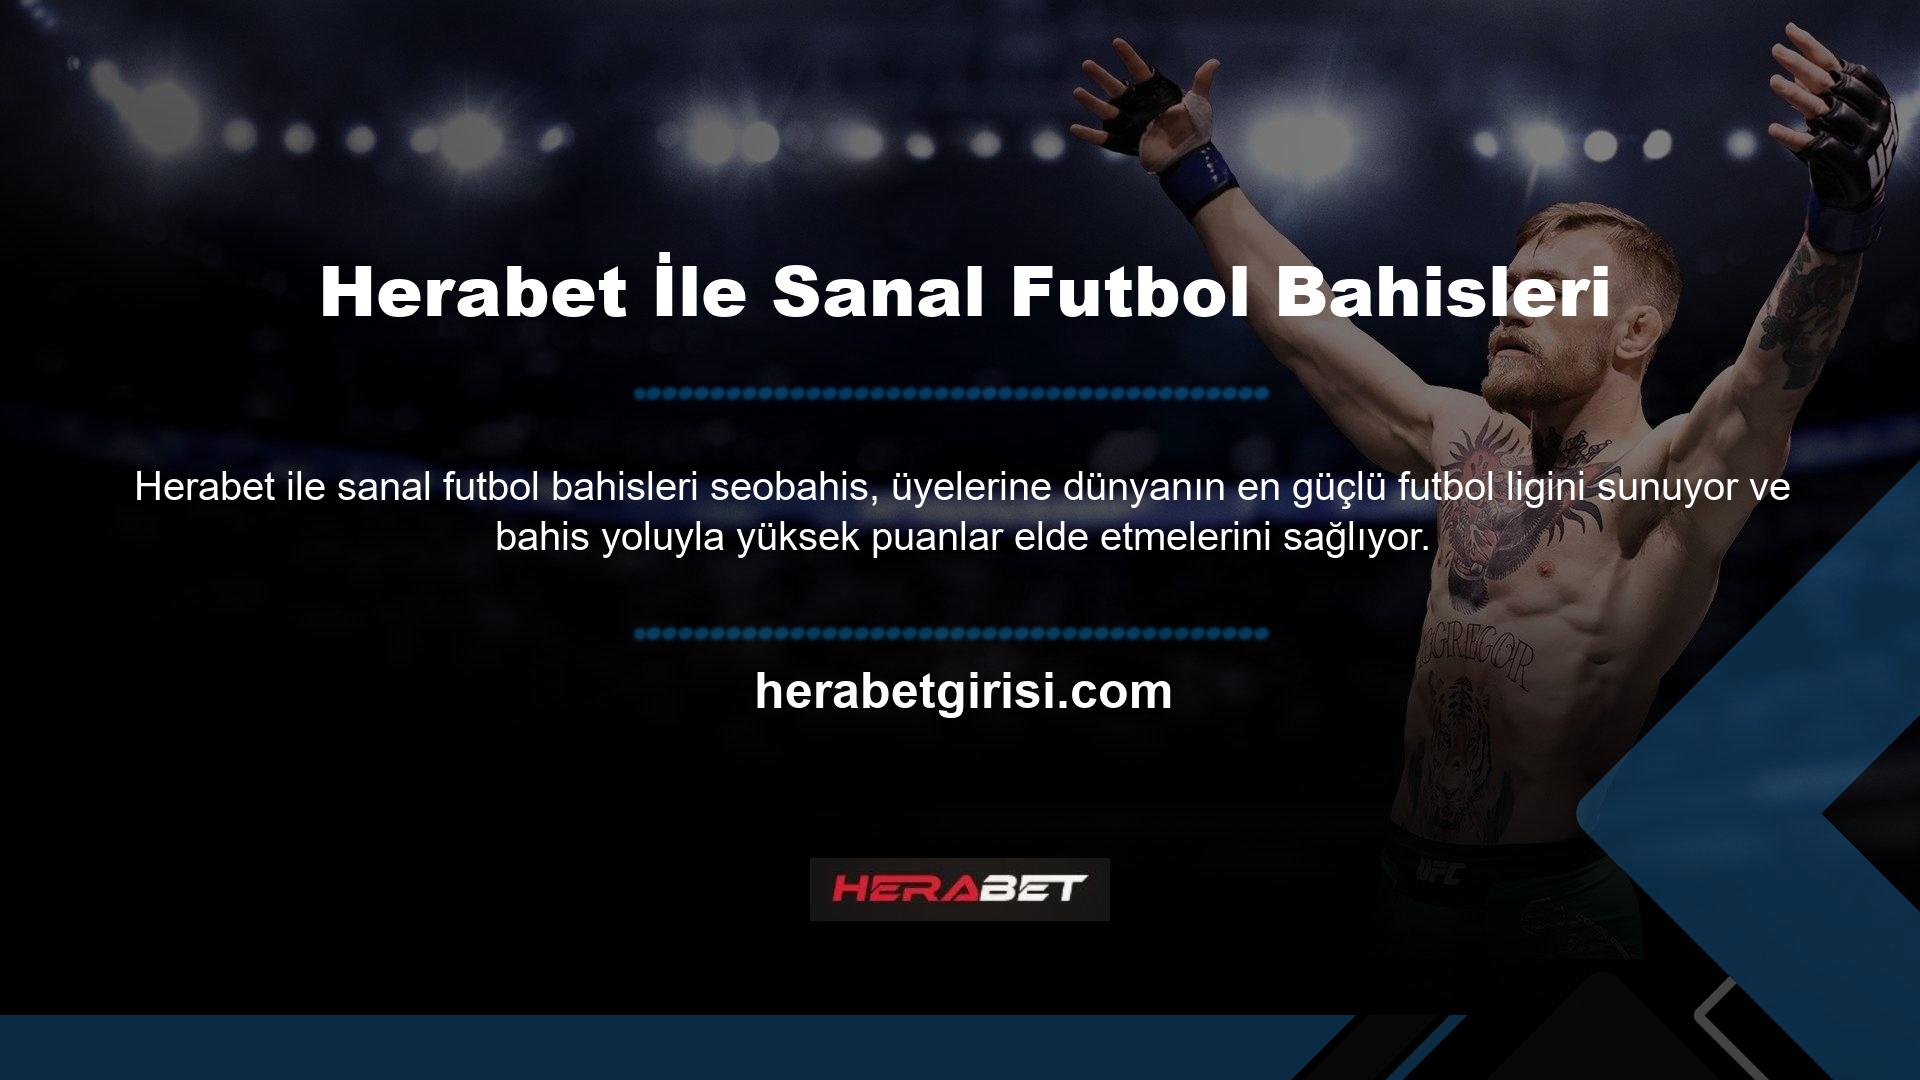 Herabet, canlı bahislerin yanı sıra bahis tutkunları için sanal futbol maçları gibi seçenekler de sunmaktadır